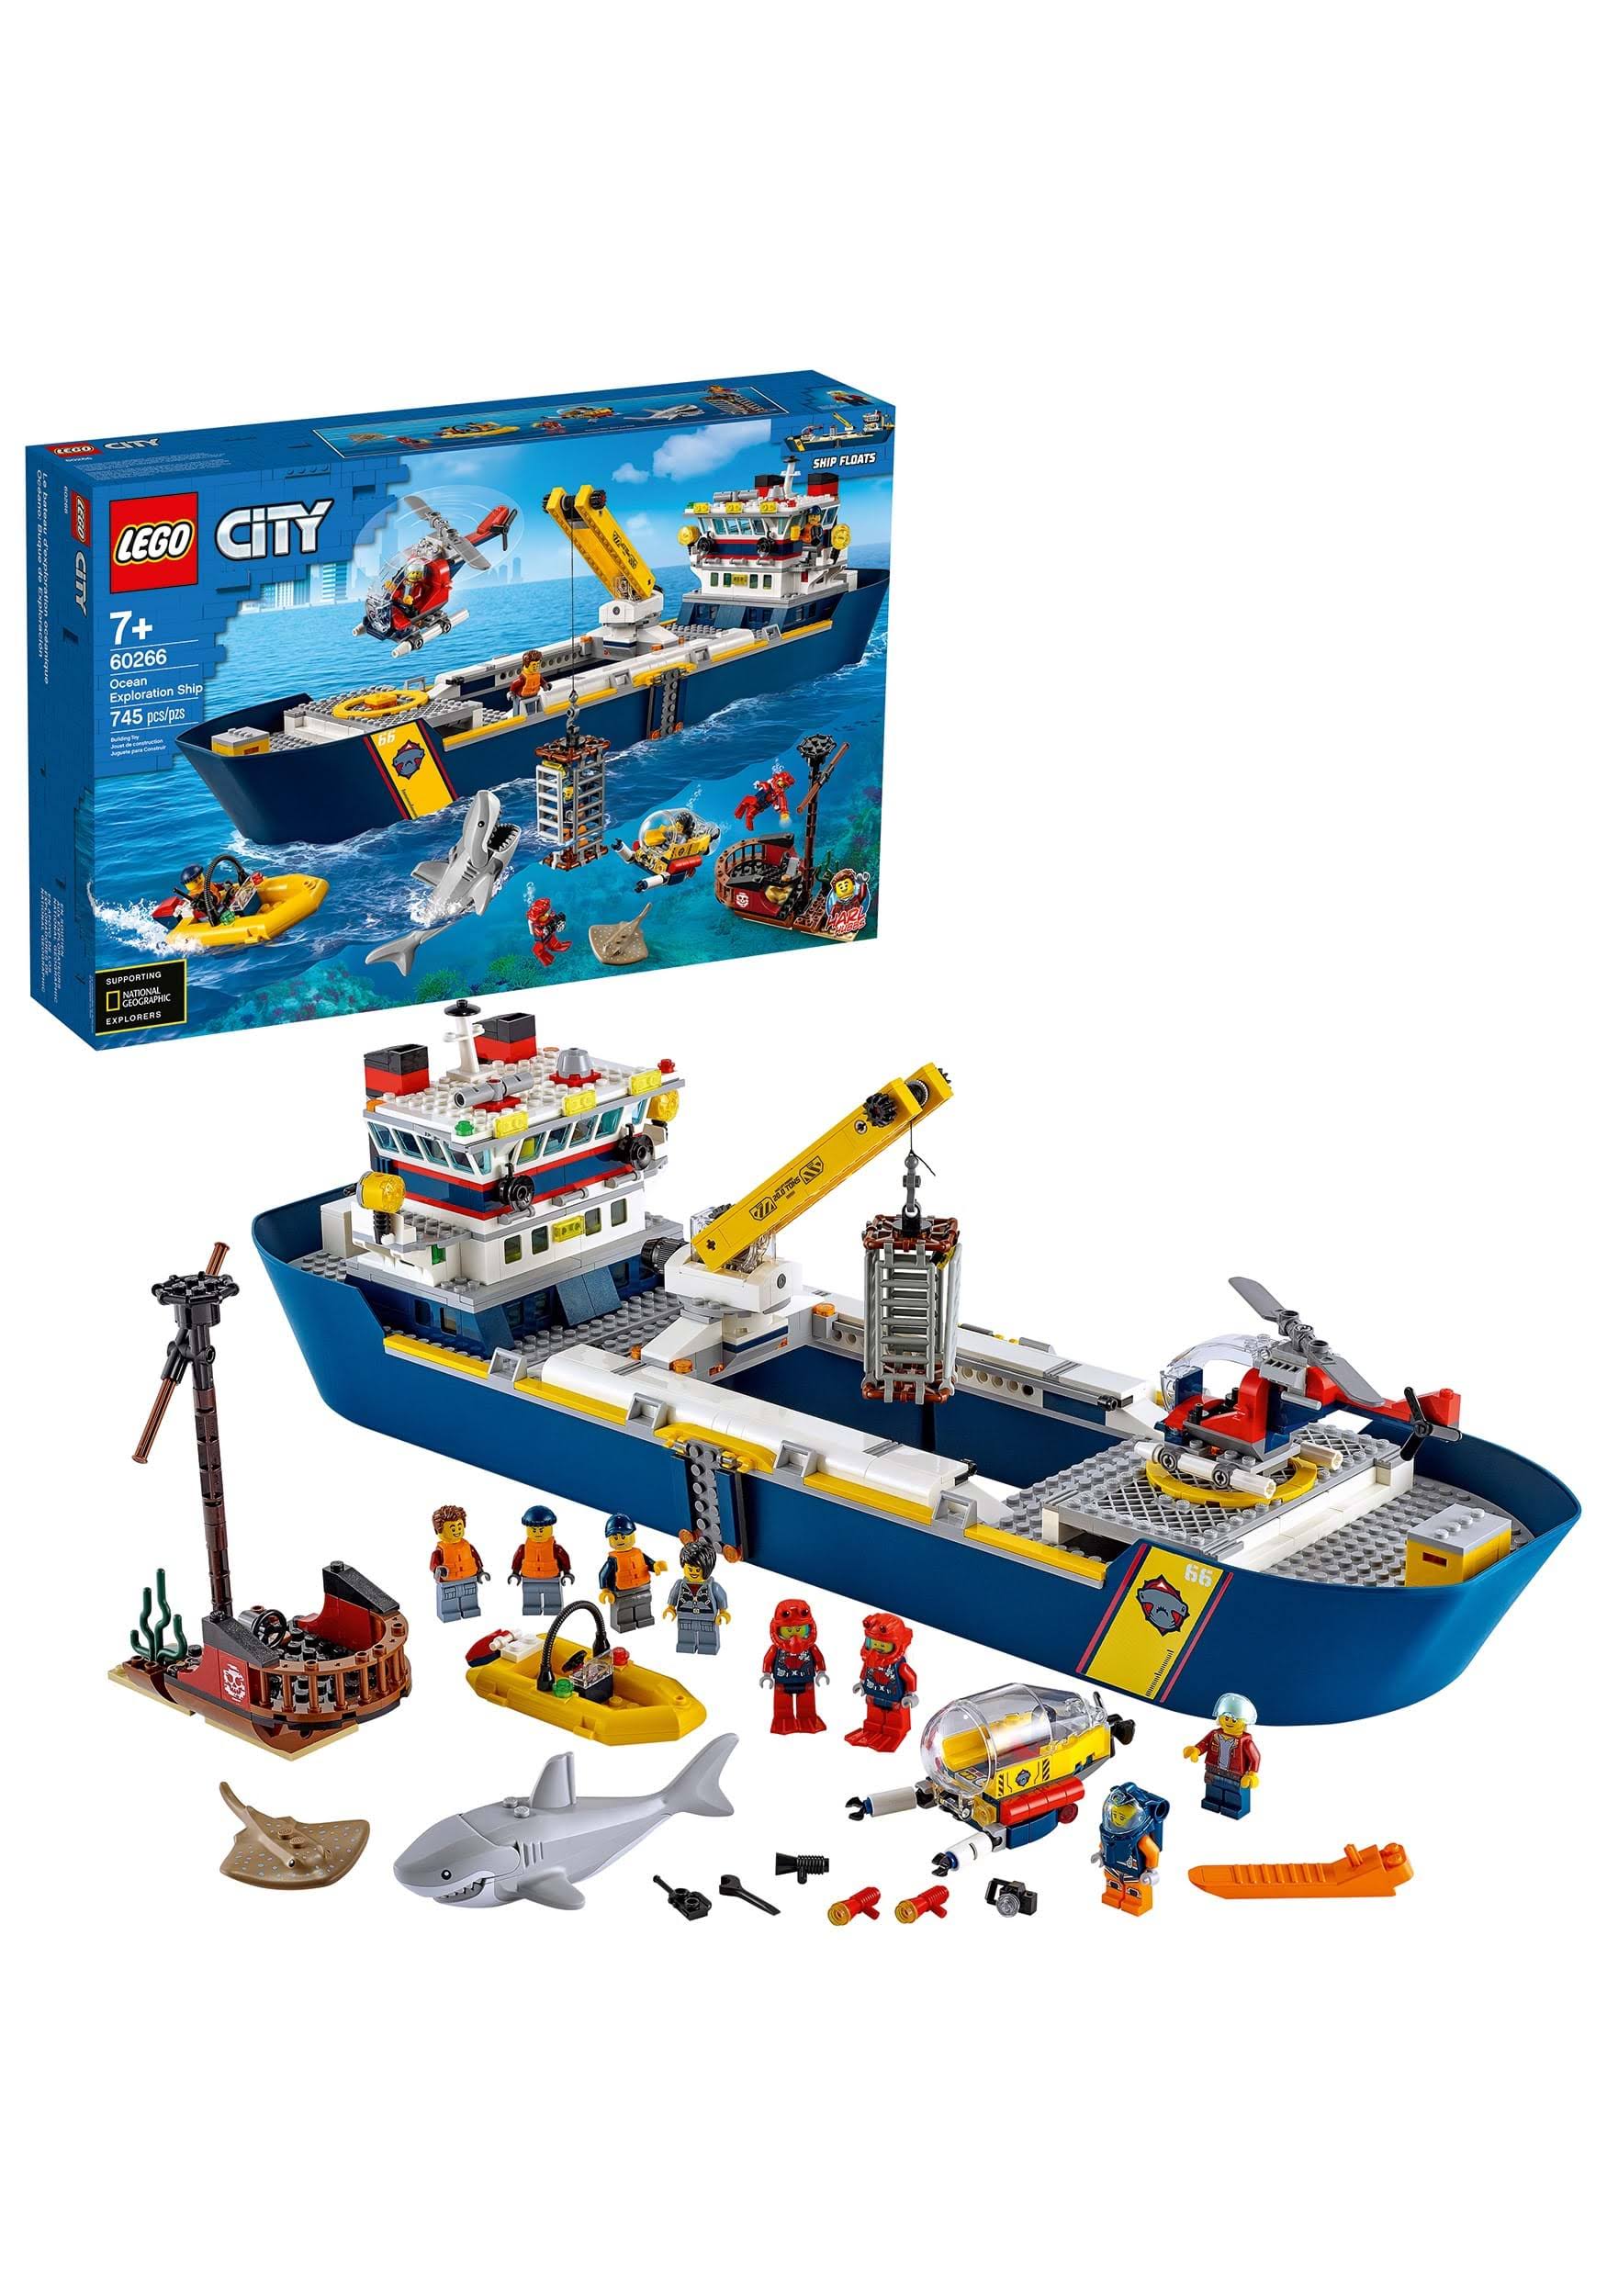 Lego City Ocean Exploration Ship 60266 Building Kit (745 Pieces)